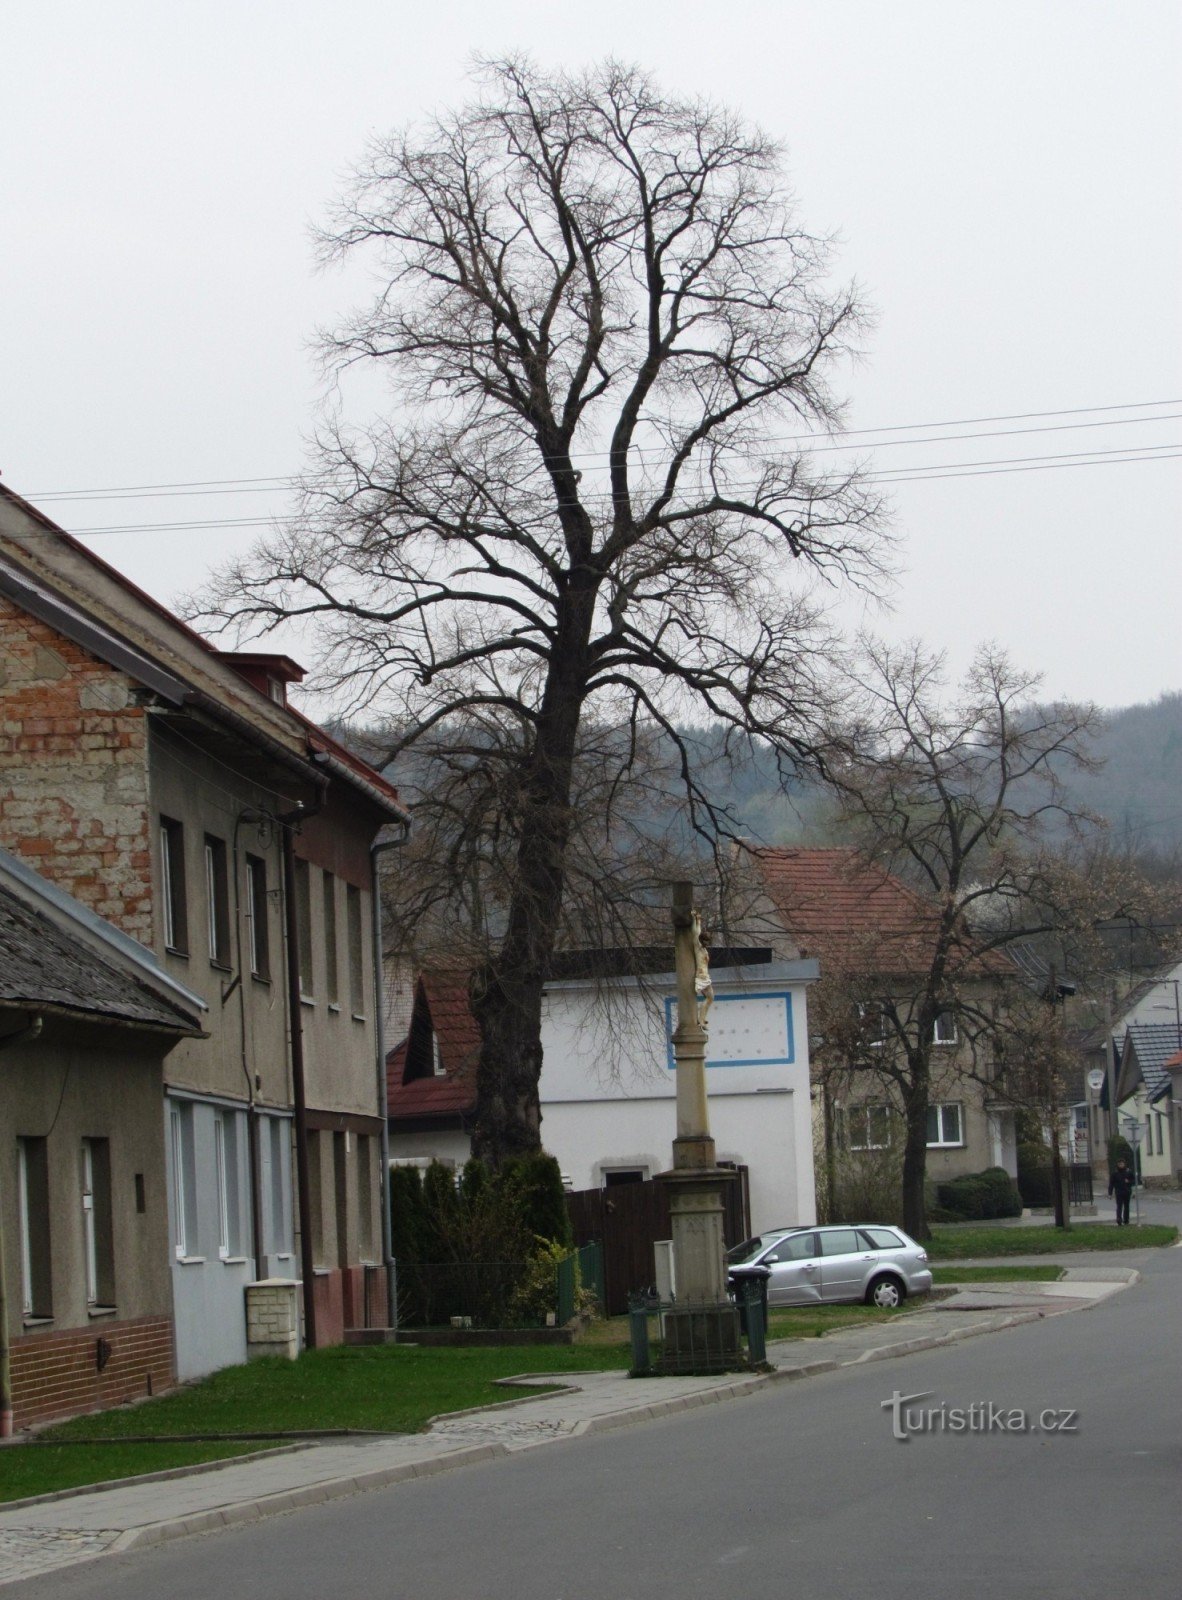 gata som leder från Dřevnice till centrum